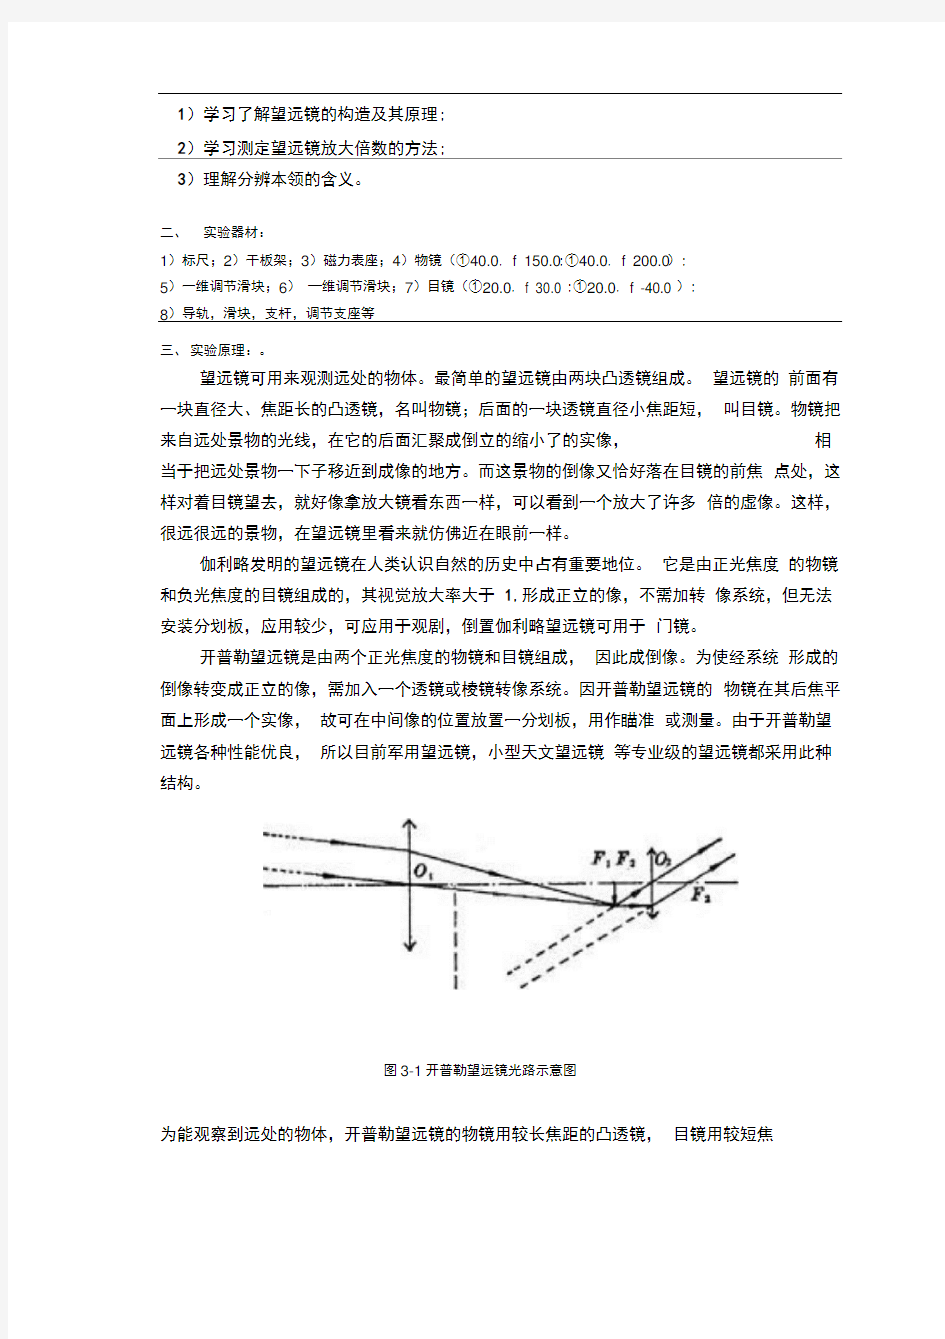 深圳大学望远系统的搭建和参数测量